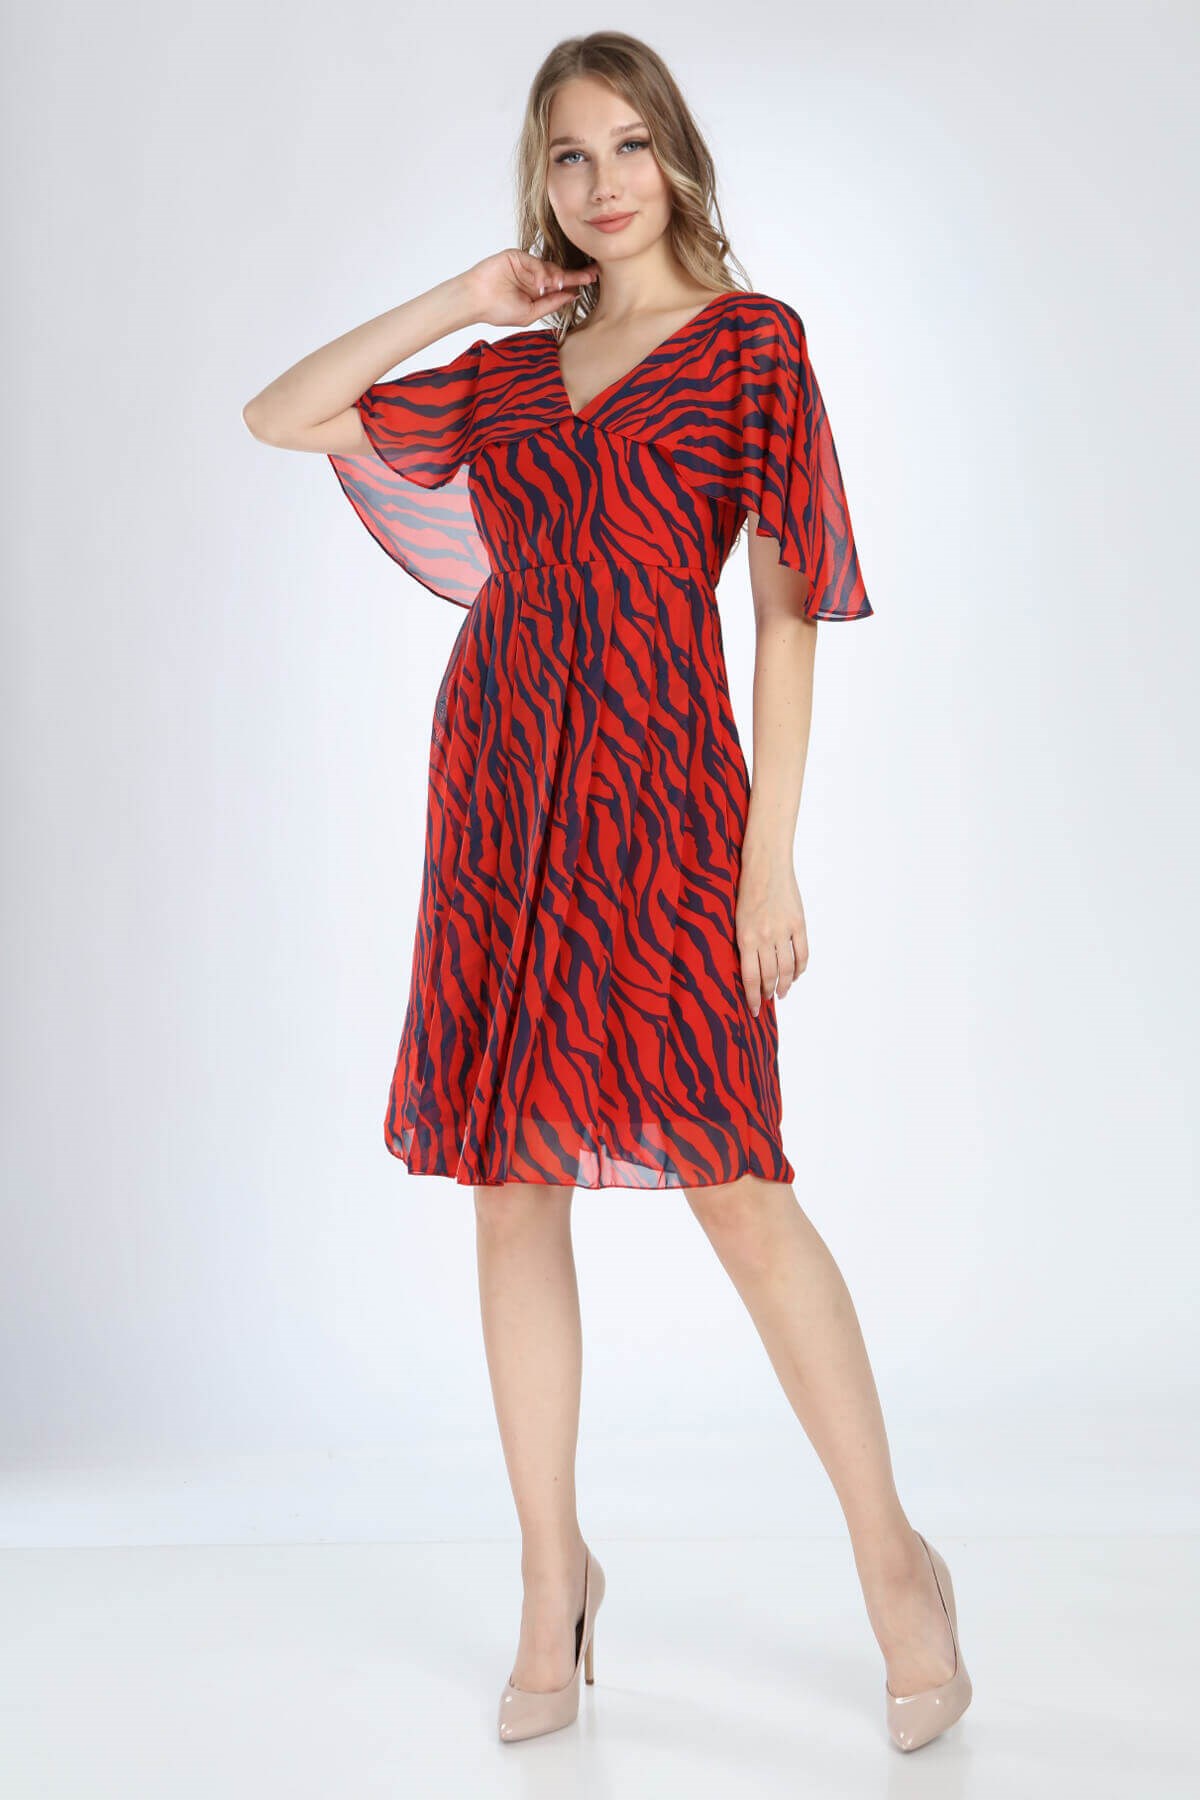 Moda Labio | Melek Kol Kısa Zebra Desenli Kırmızı Elbise